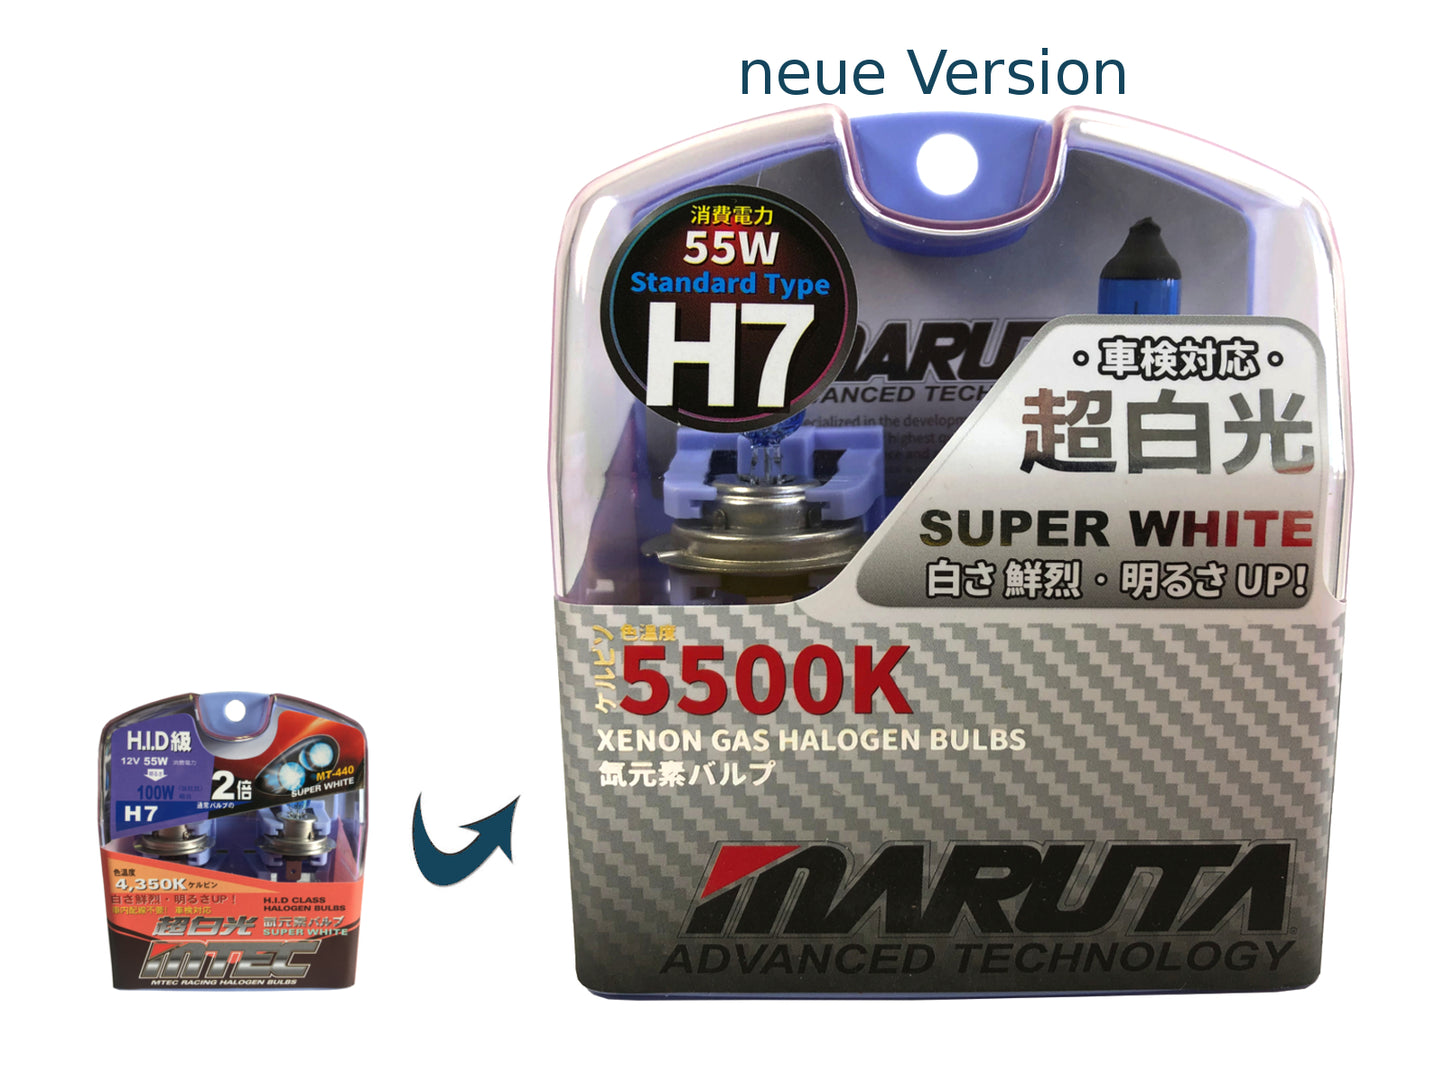 MARUTA SUPER WHITE H7 12V 55W Halogenlampe für Scheinwerfer